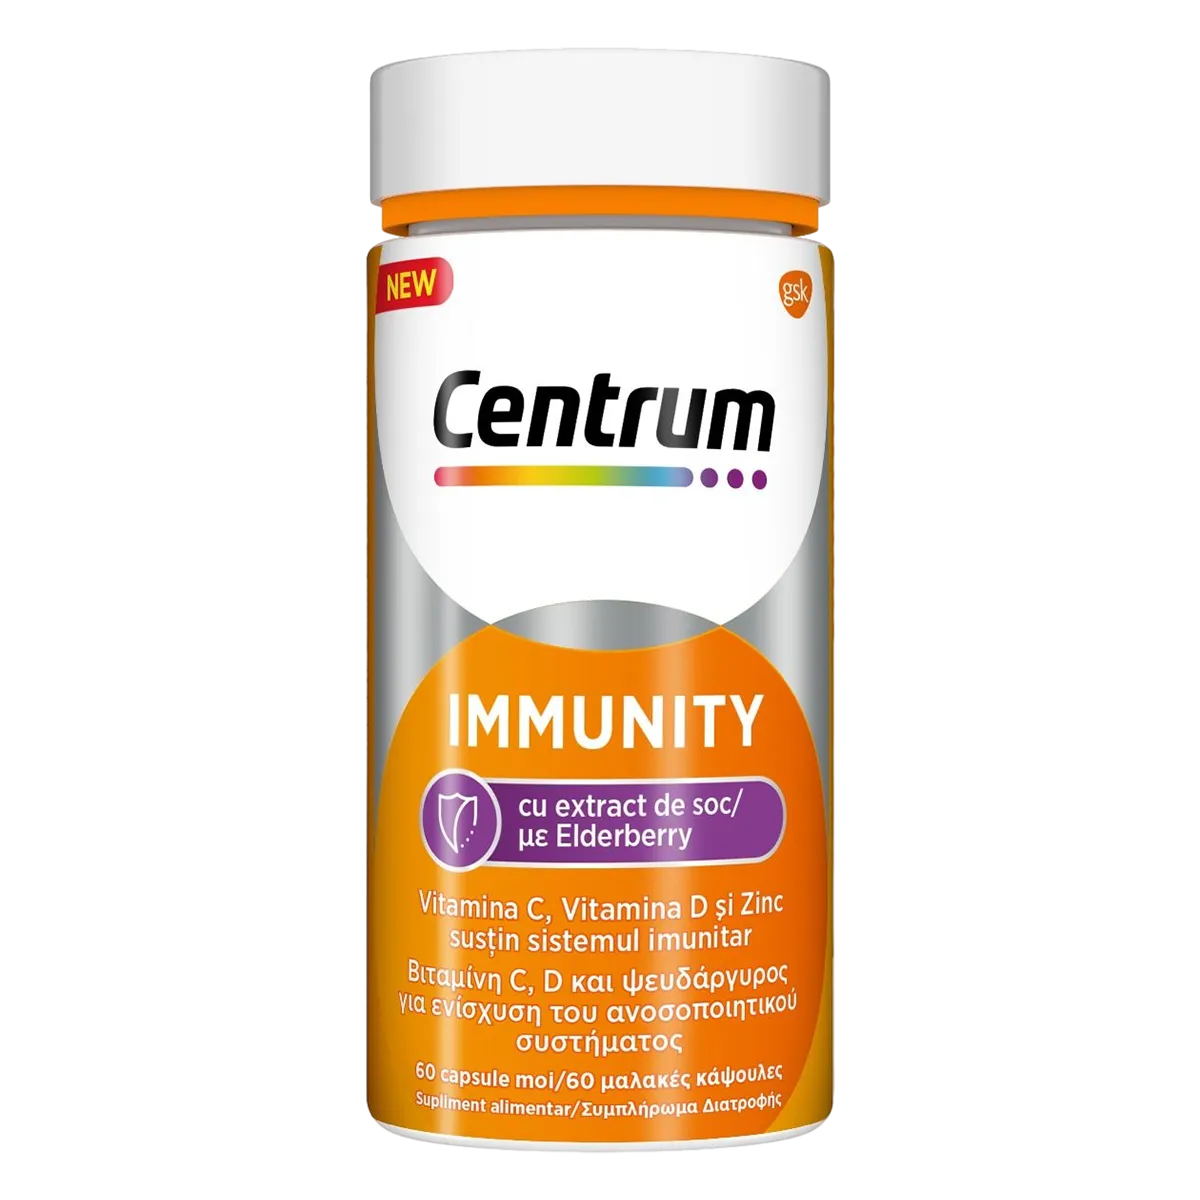 CENTRUM Immunity cu extract de soc